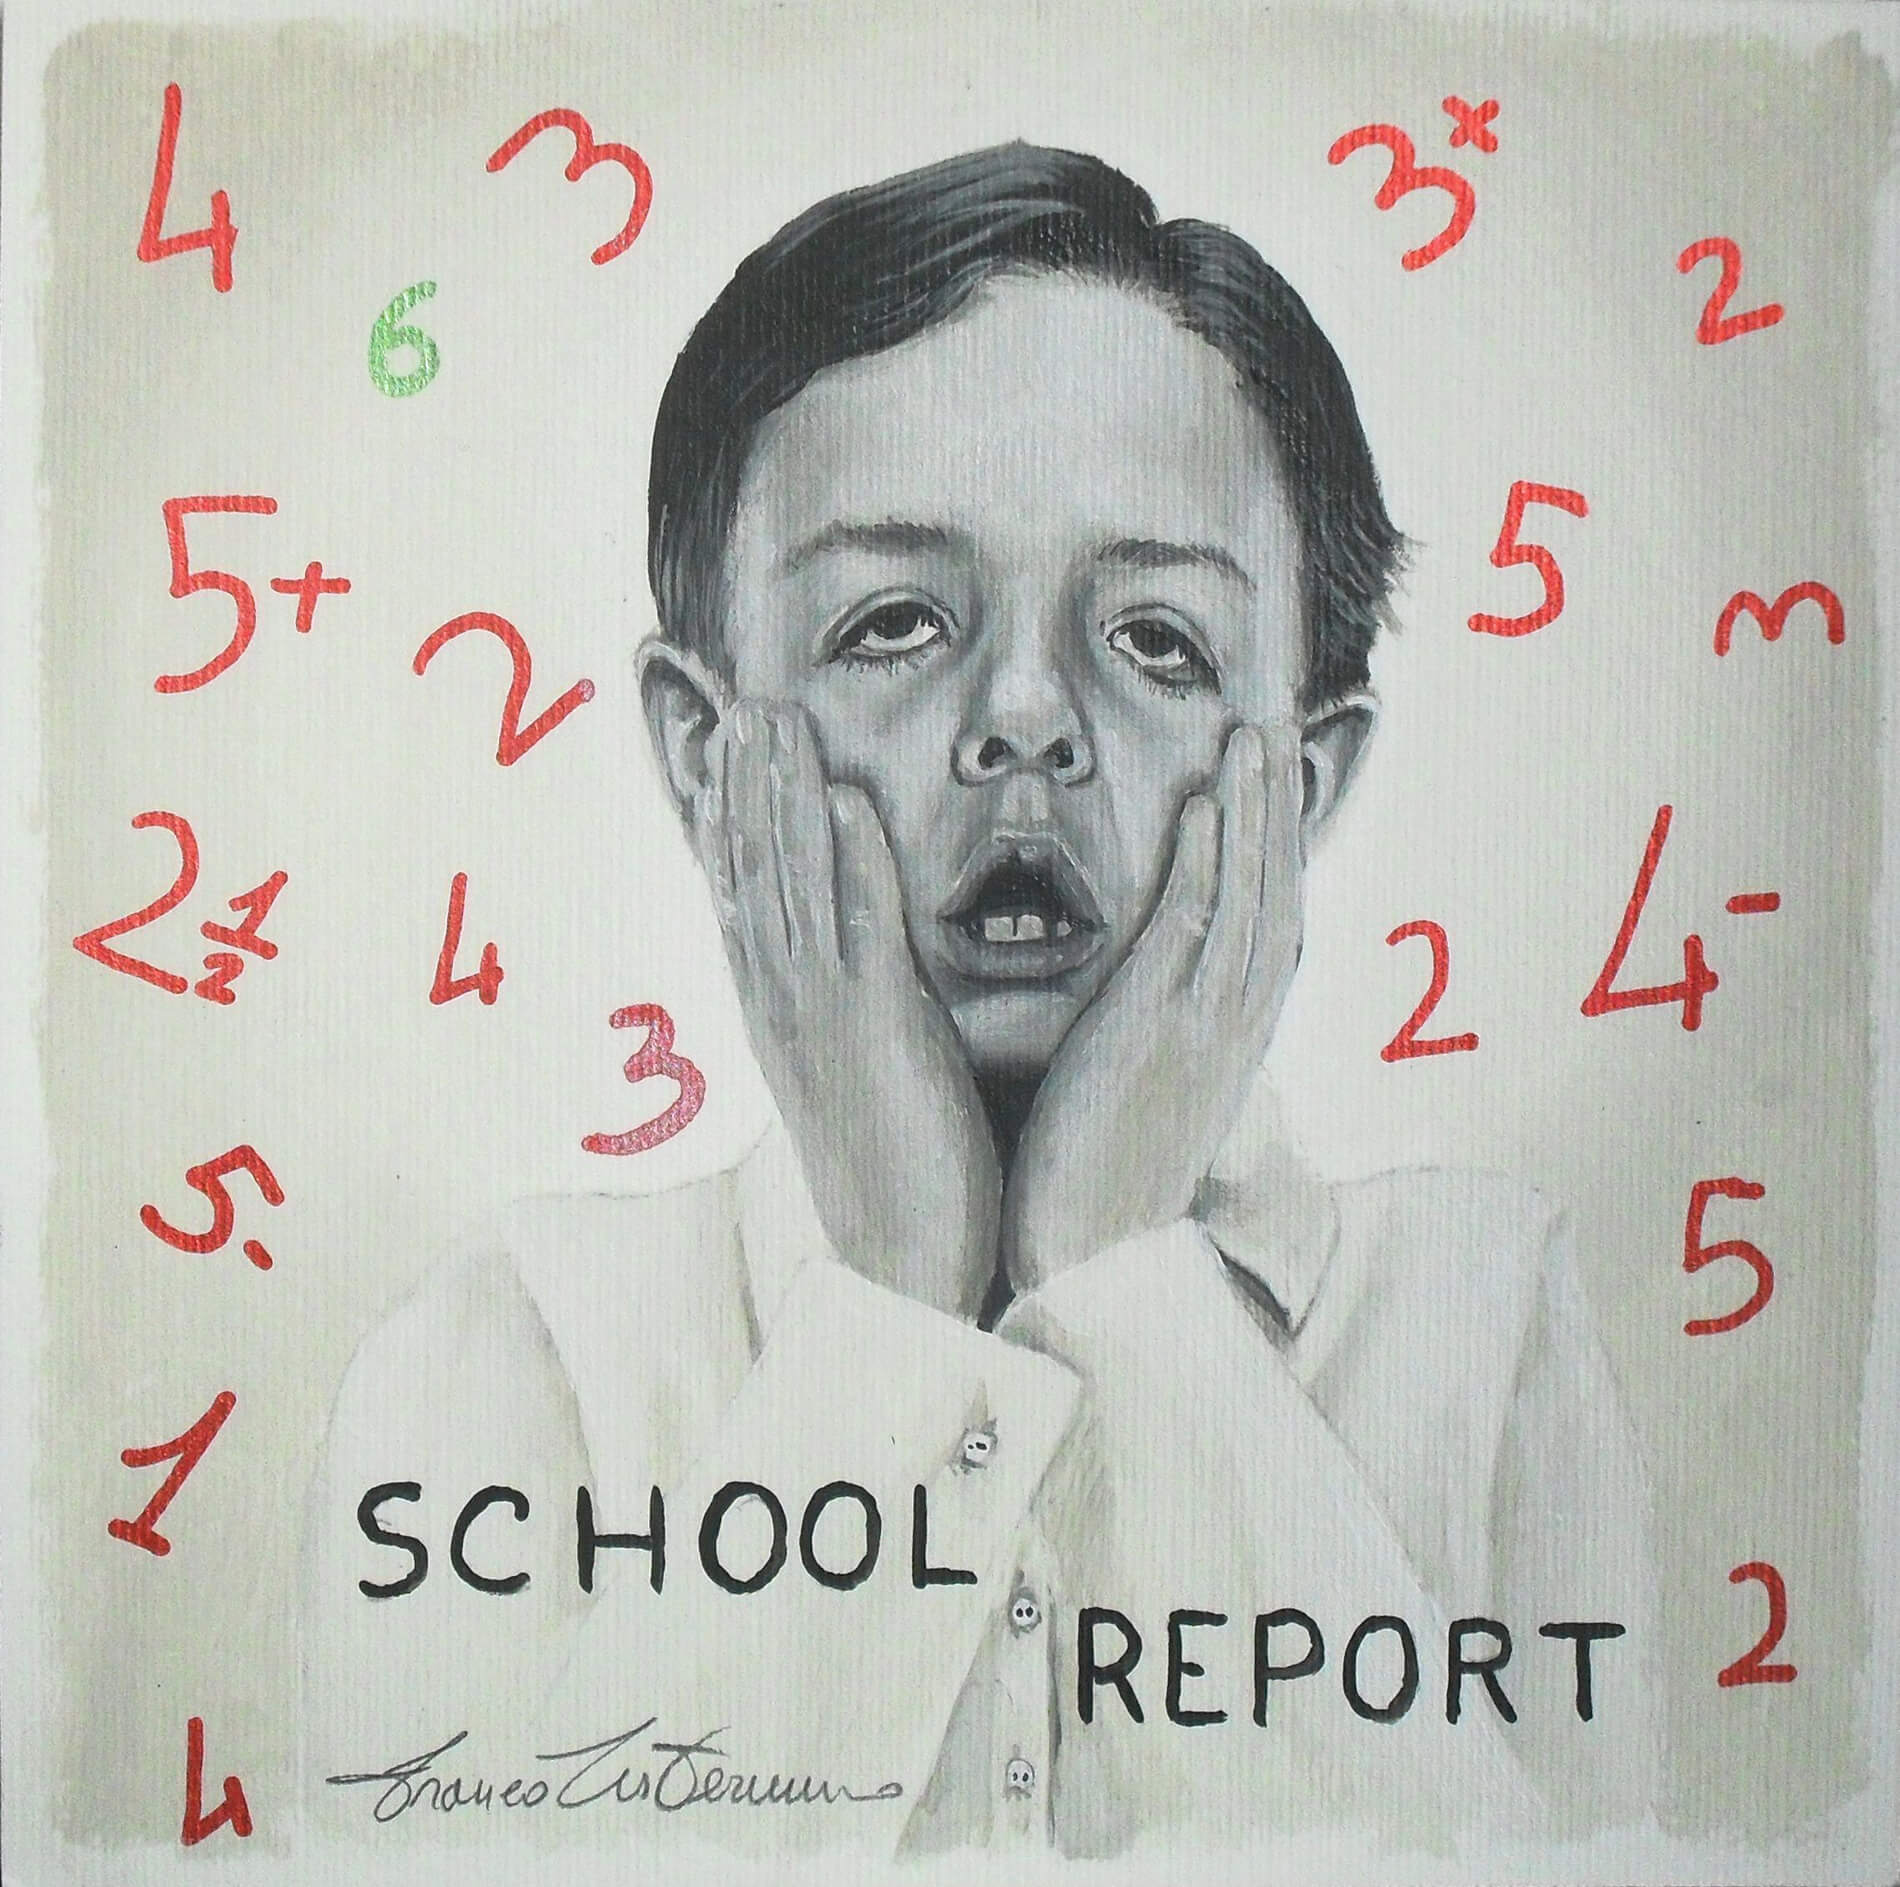 School Report